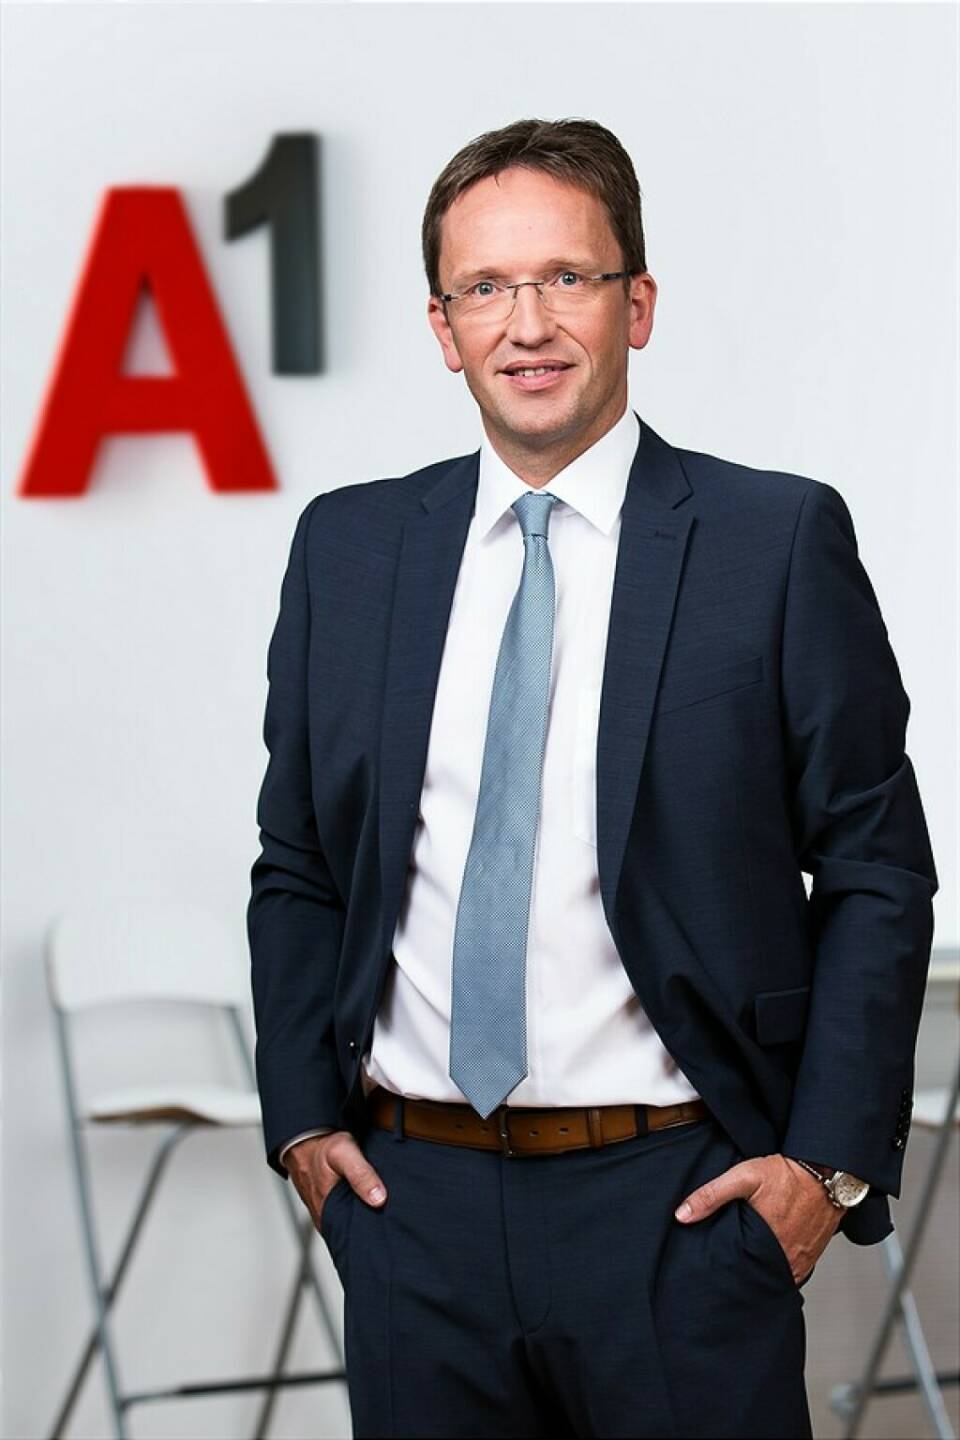 Alfred Mahringer ist neuer Personalchef bei A1 Österreich; Credit: A1